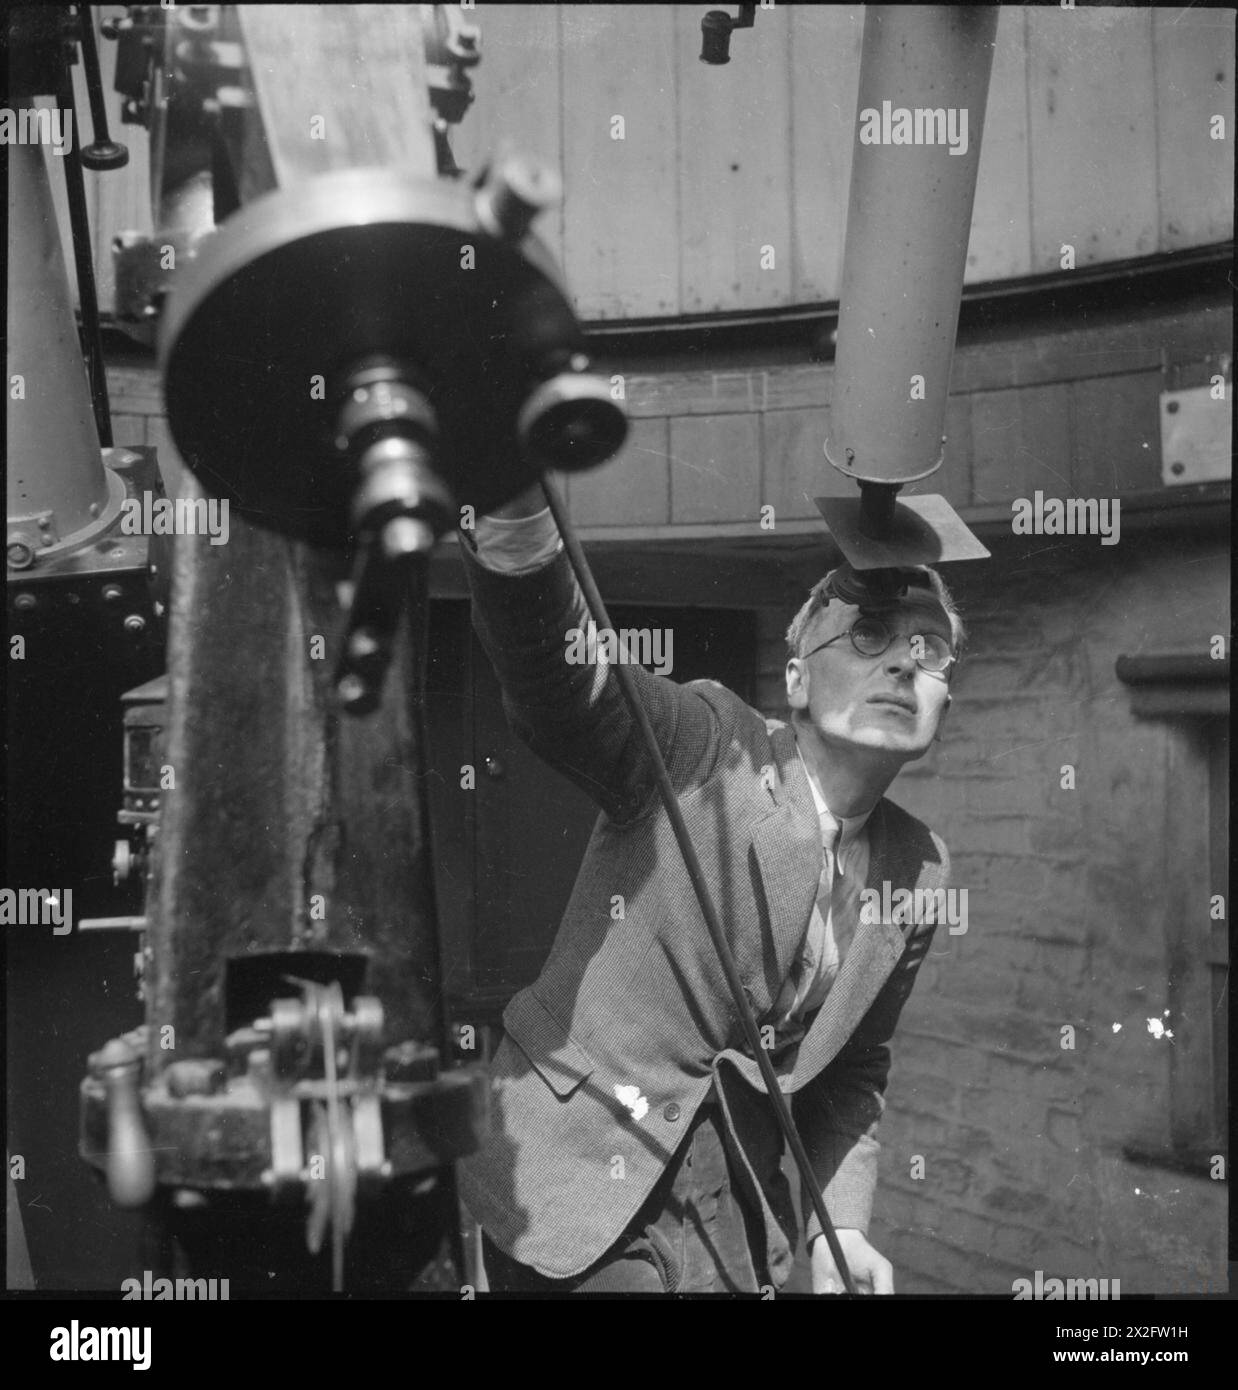 THE ROYAL OBSERVATORY : LA VIE QUOTIDIENNE AU ROYAL OBSERVATORY, GREENWICH, LONDRES, ANGLETERRE, ROYAUME-UNI, 1945 - Un scientifique de l'Observatoire royal de Greenwich attend une pause dans les nuages pour prendre une photo du soleil à l'aide d'un haliographe. Selon la légende originale, cela se produit quotidiennement, si le temps le permet, depuis 1873 et « les photographies sont mesurées pour obtenir les zones et les positions des taches et autres marques sur le Soleil, fournissant ainsi un enregistrement continu de l'activité du Soleil » Banque D'Images